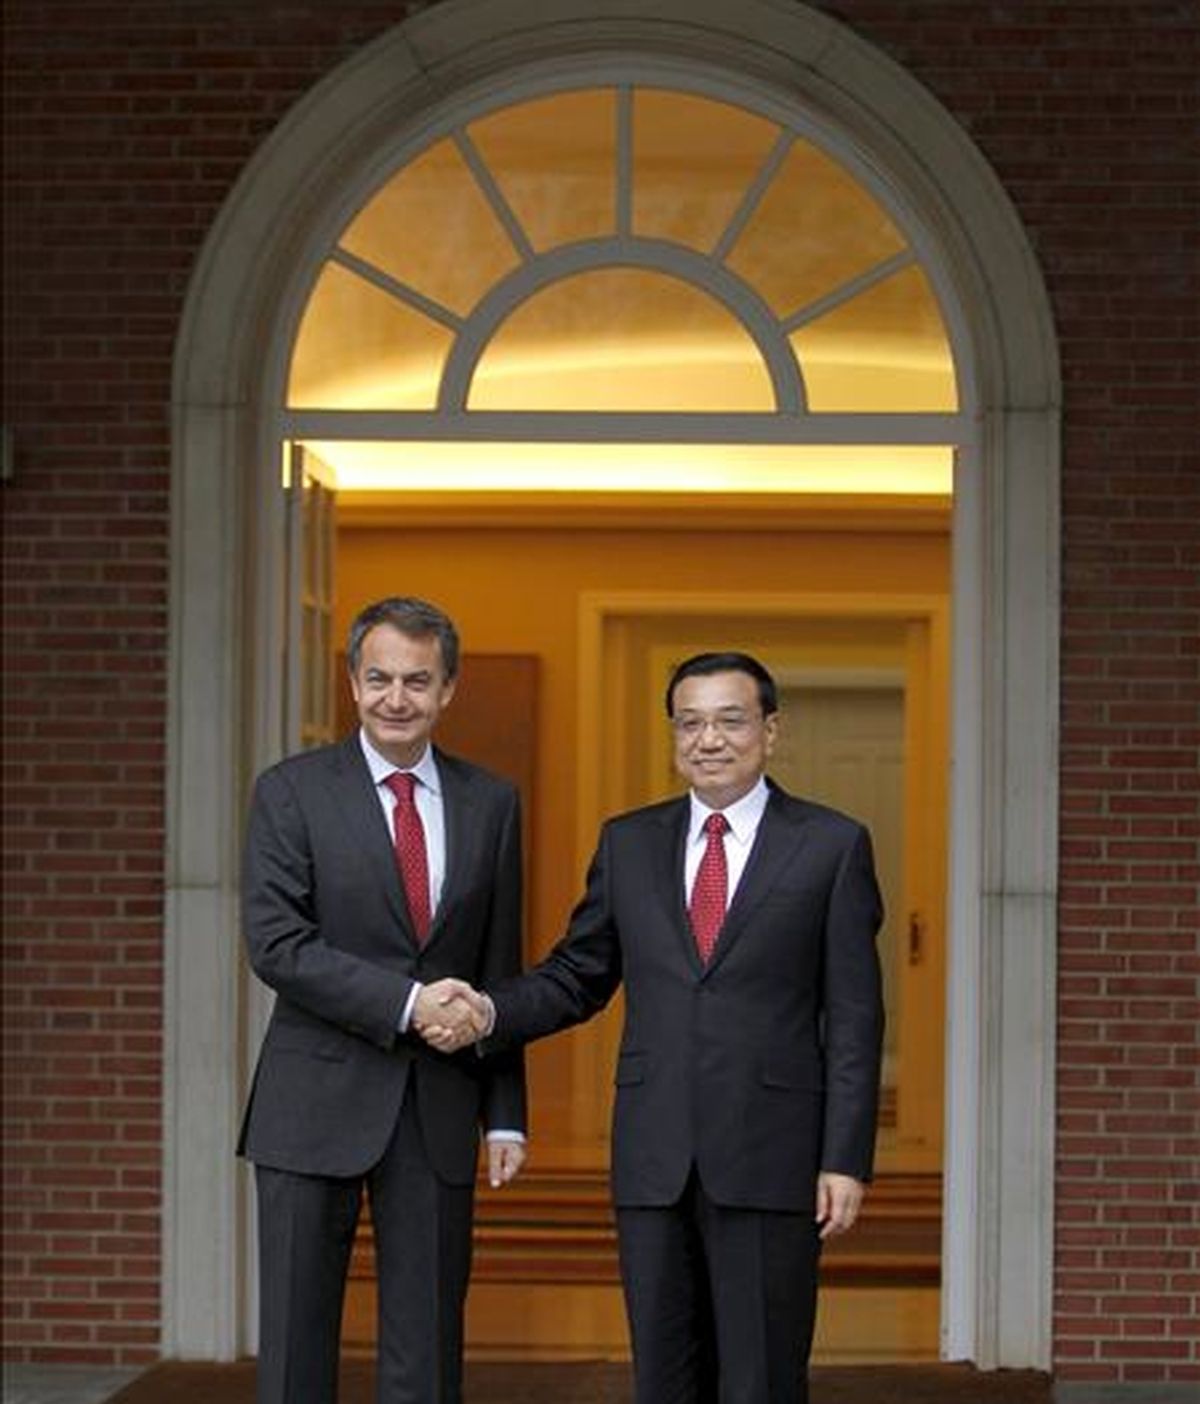 El presidente del Gobierno, José Luis Rodríguez Zapatero, recibió hoy, en el Palacio de la Moncloa, al viceprimer ministro chino, Li Keqiang, que se encuentra de visita oficial en España. EFE